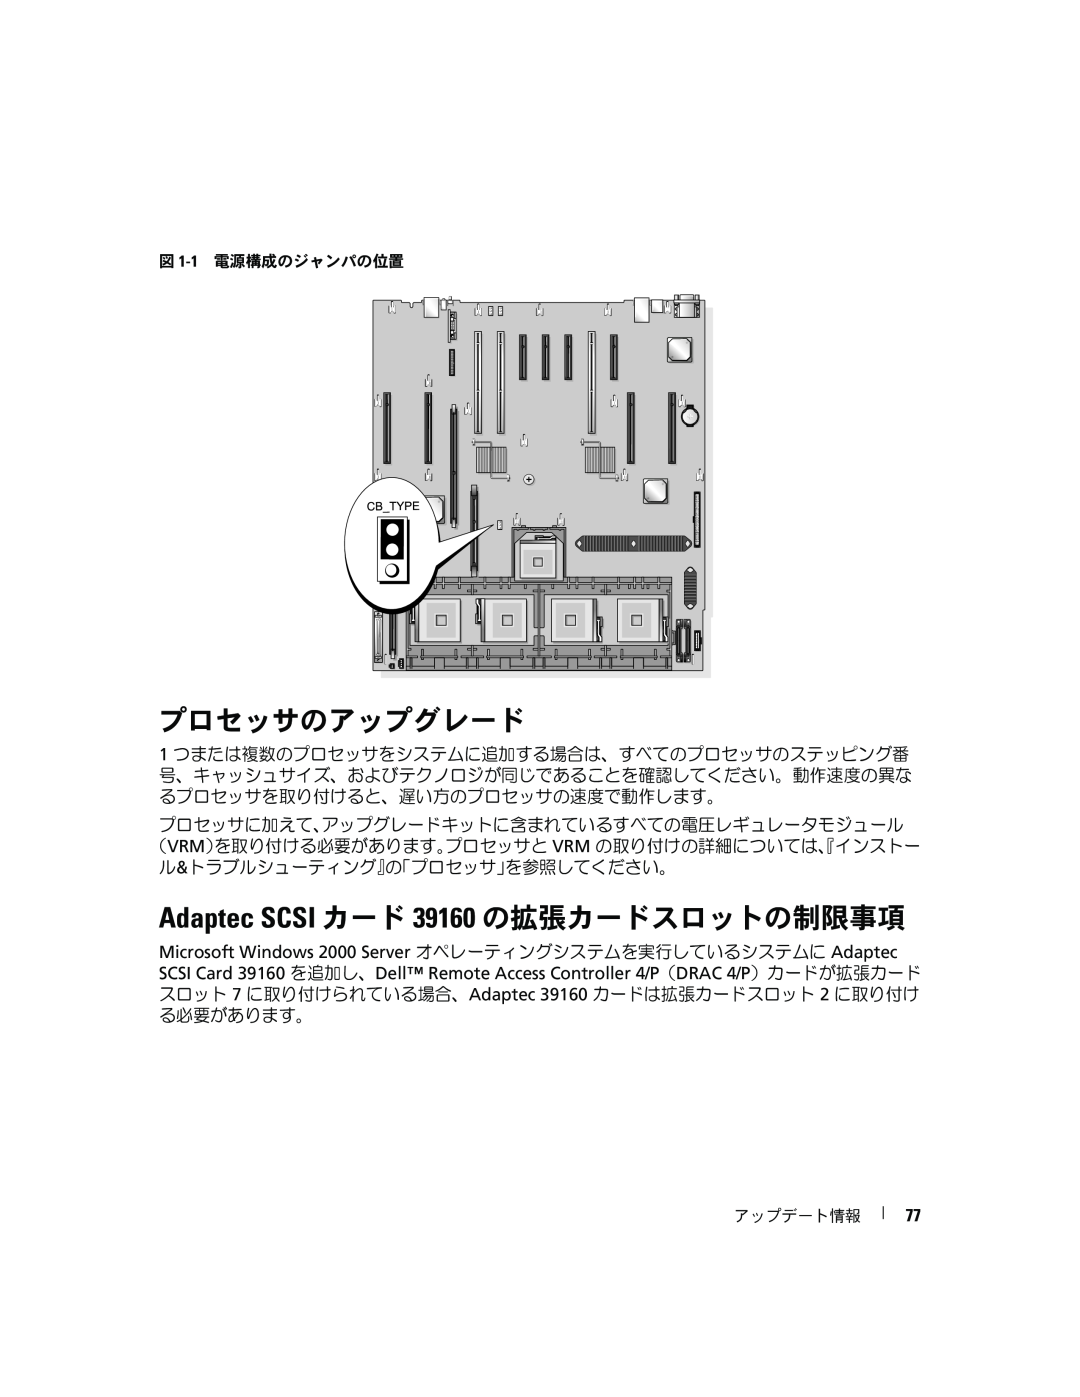 Dell 6800 manual プロセッサのアップグレード, Adaptec SCSI カード 39160 の拡張カードスロットの制限事項 